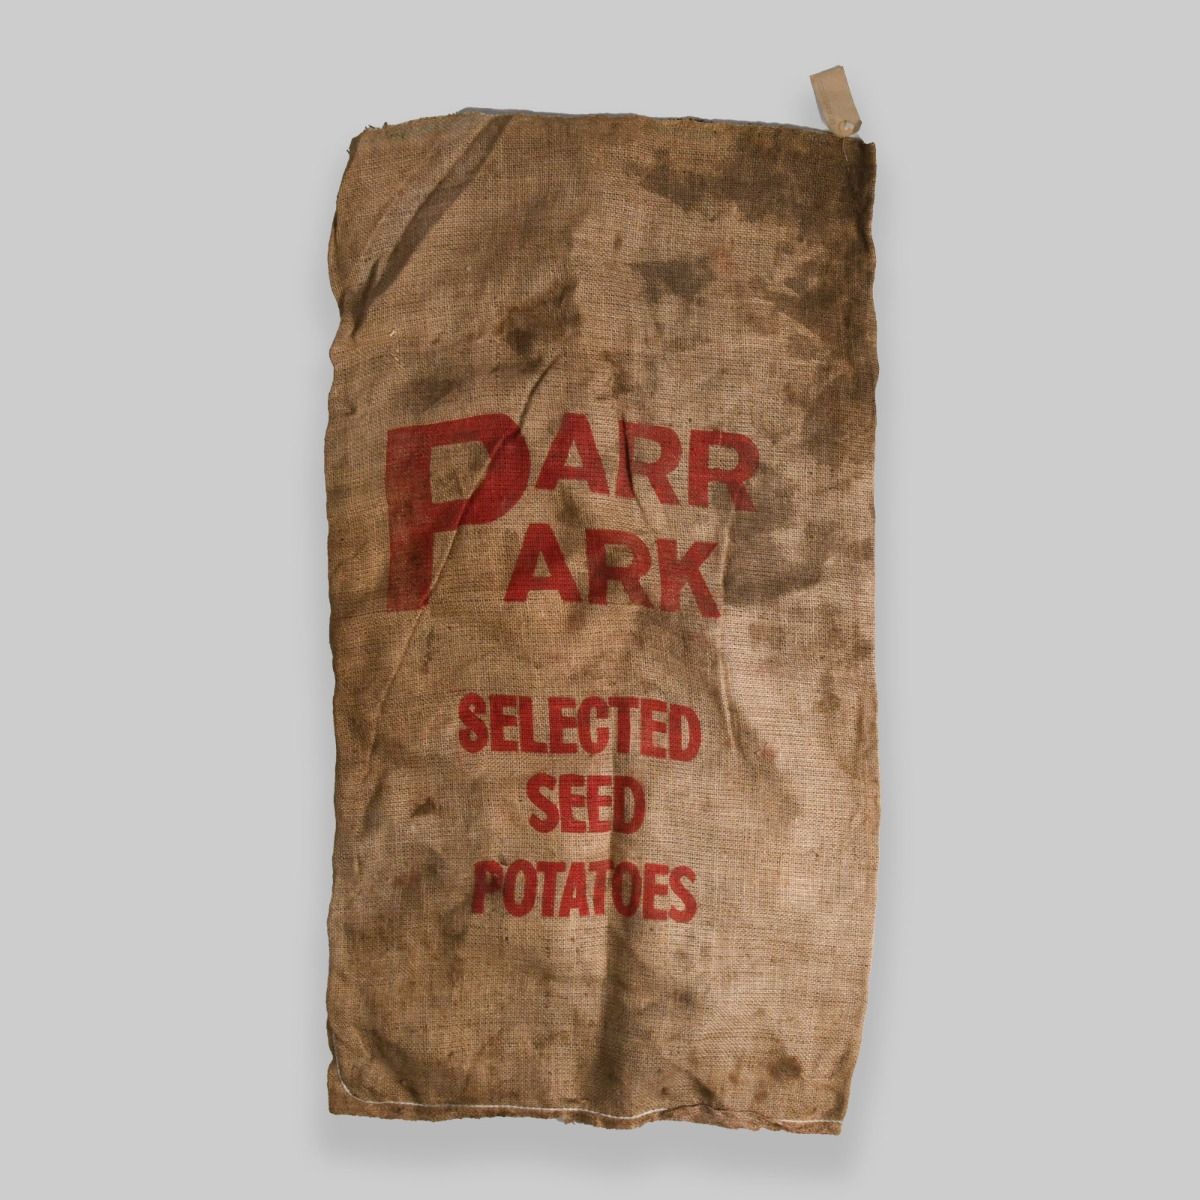 Vintage Hessian 'Parr Park' Potato Sack